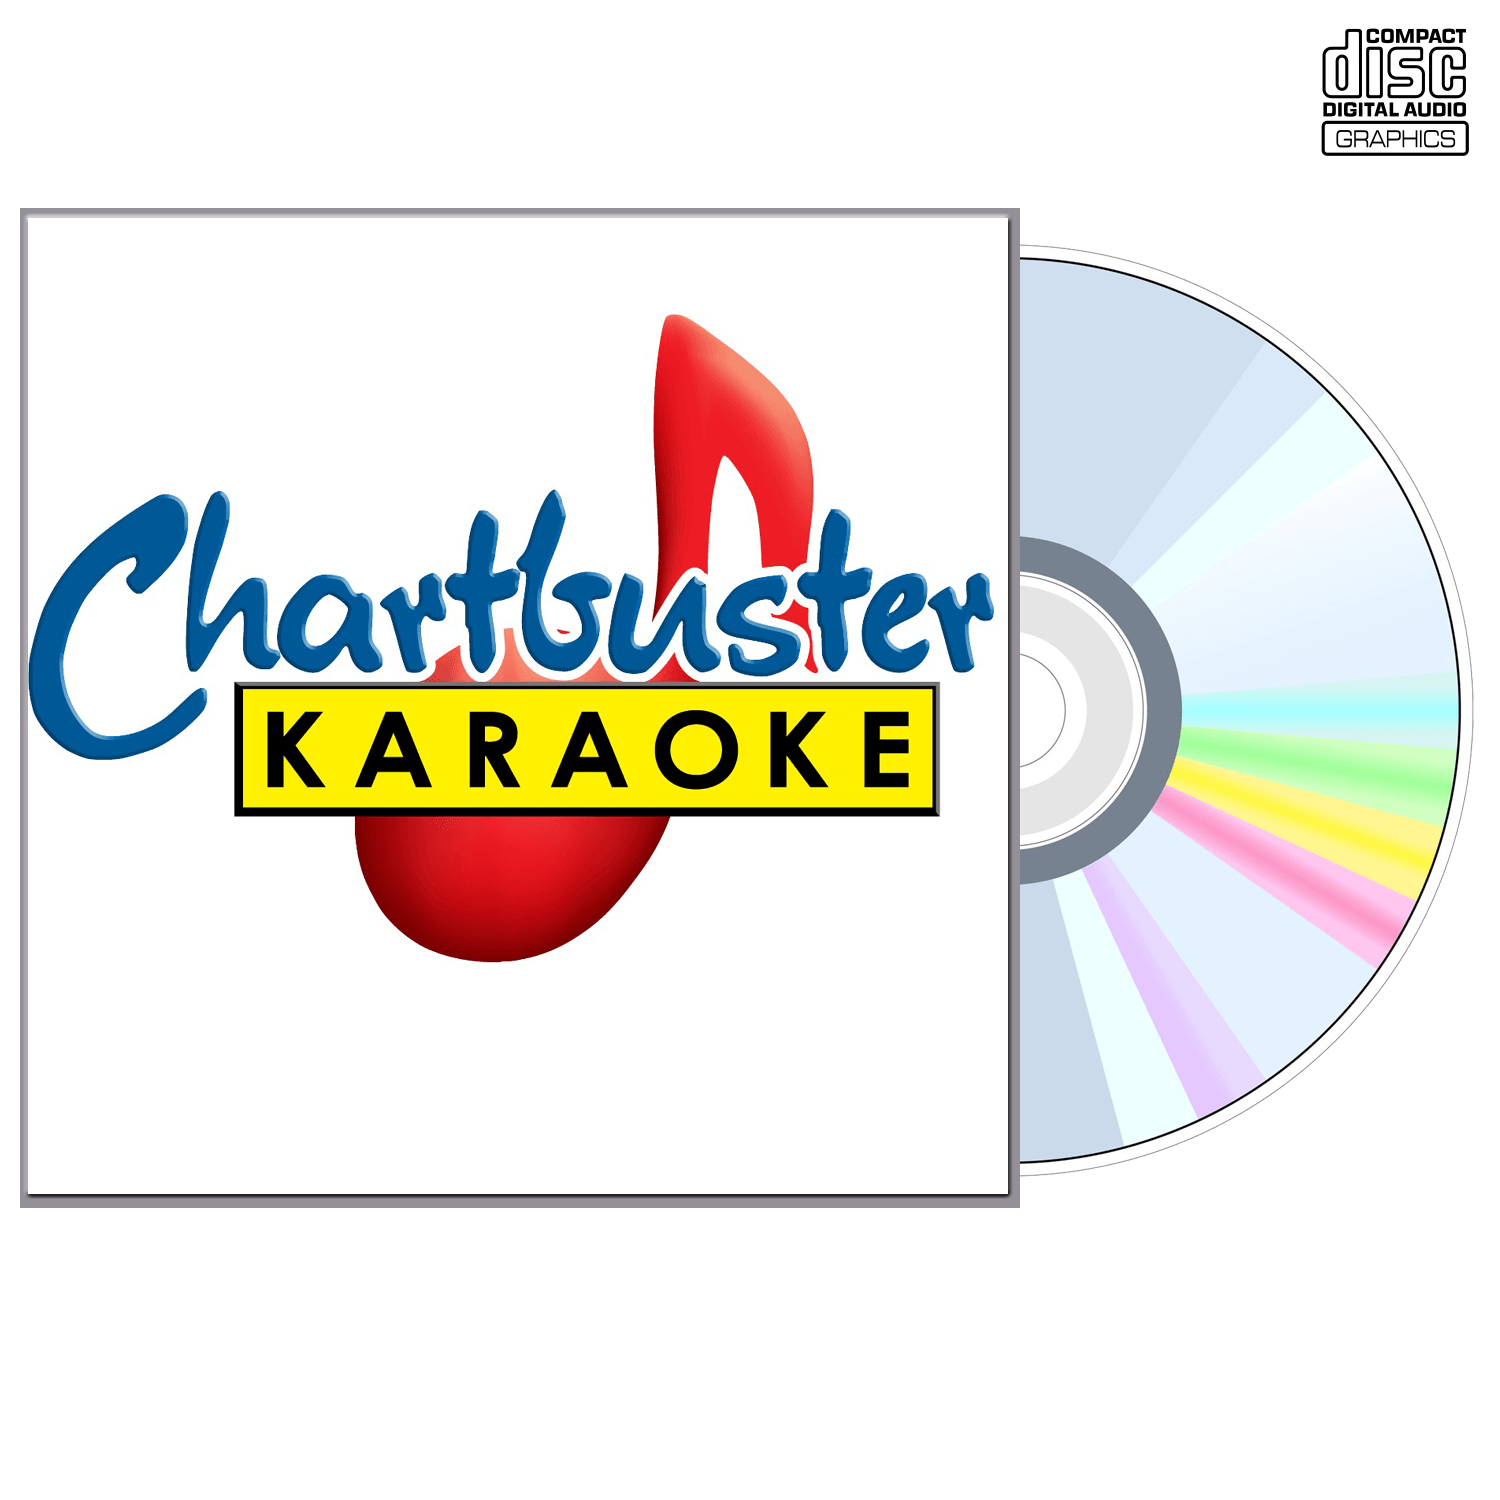 Kate Voegele - CD+G - Chartbuster Karaoke - Karaoke Home Entertainment